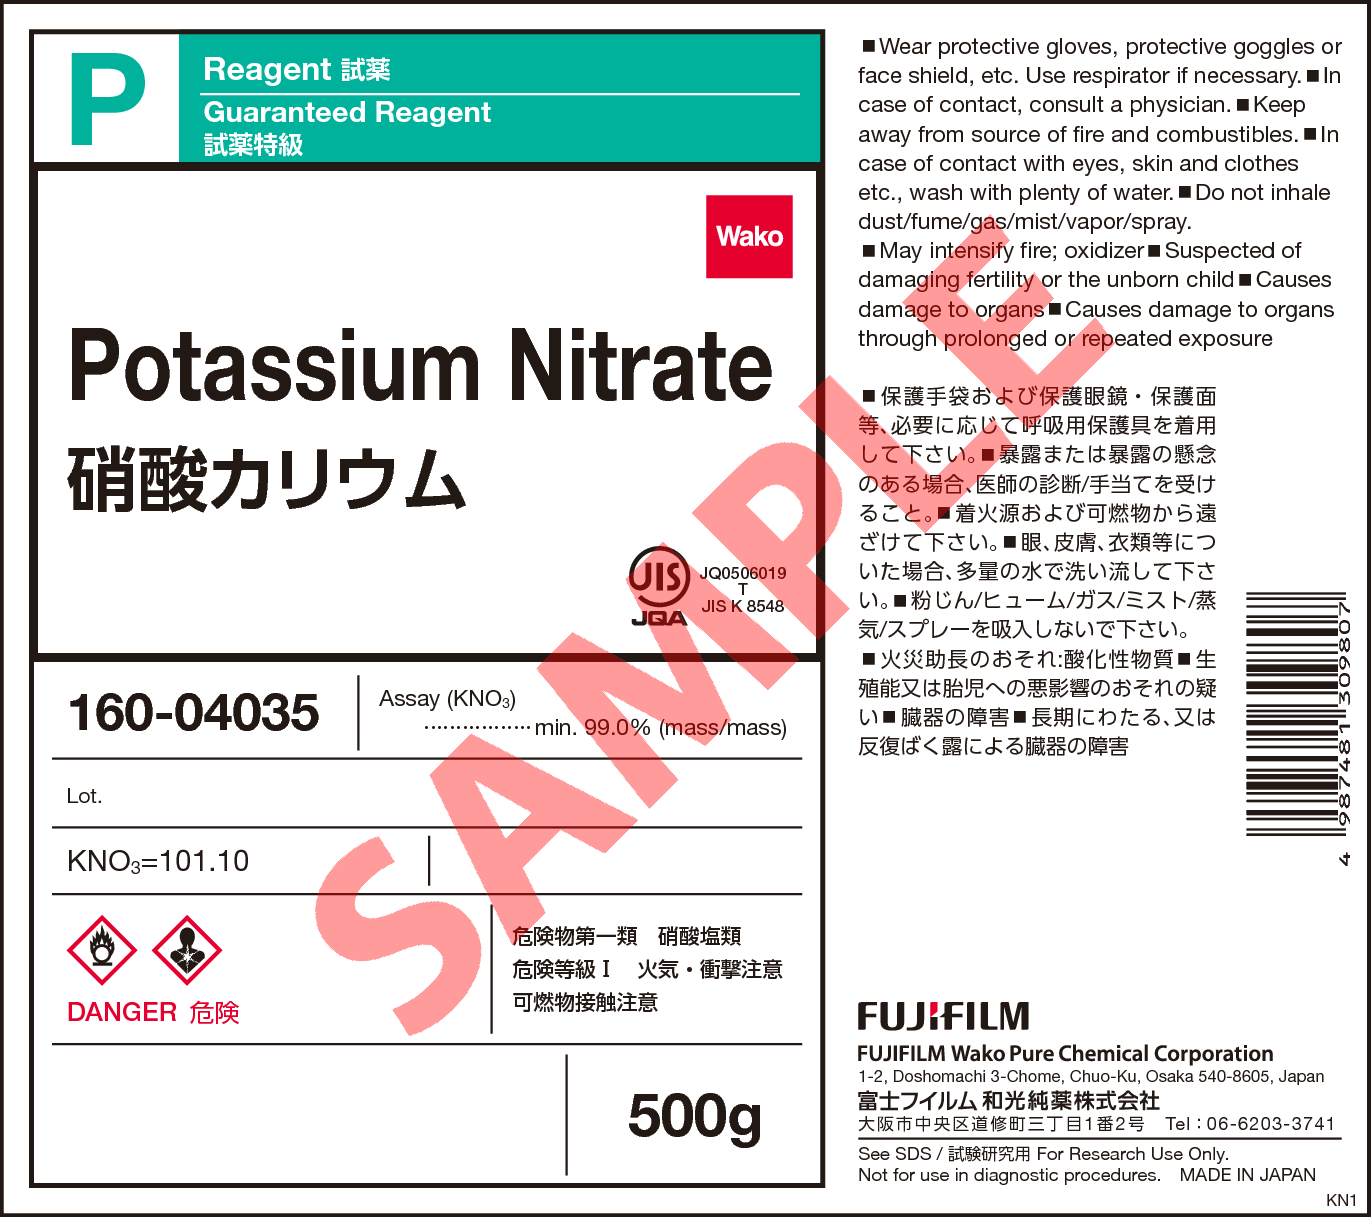 7757-79-1・硝酸カリウム・Potassium Nitrate・166-04037・166-04032 ...